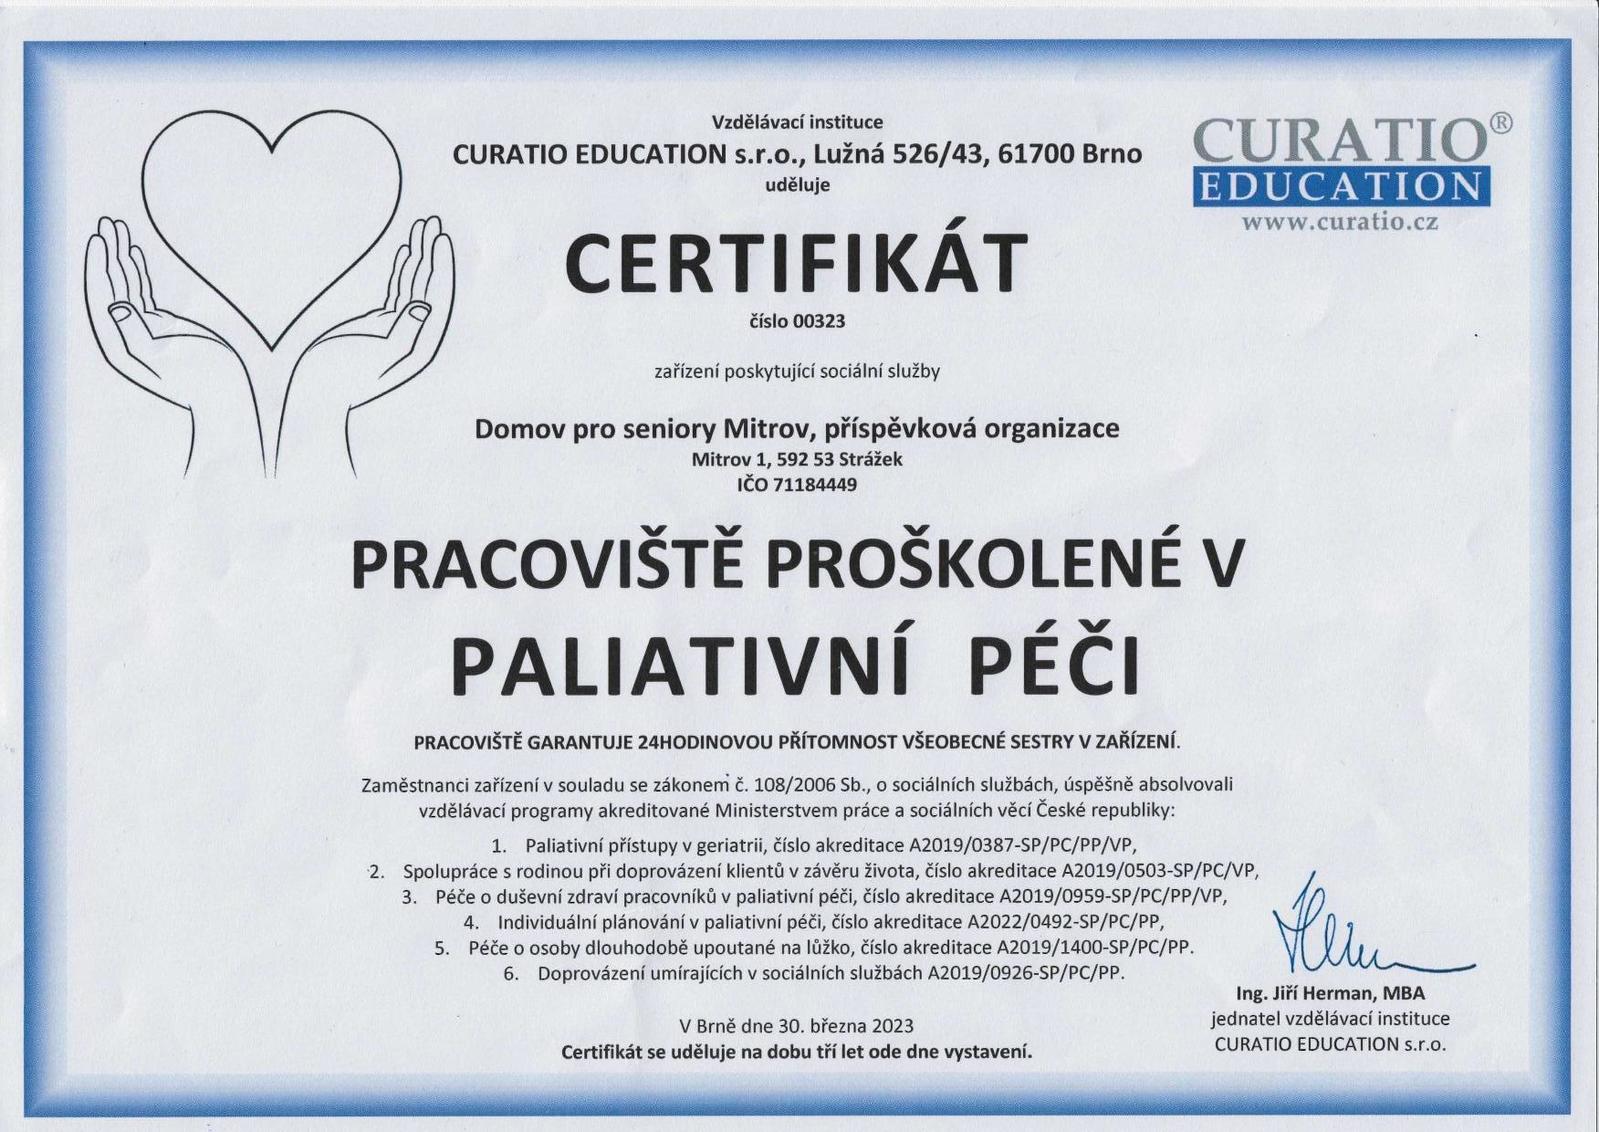 Certifikát paliativní péče, 12.4.2023-page-001.jpg